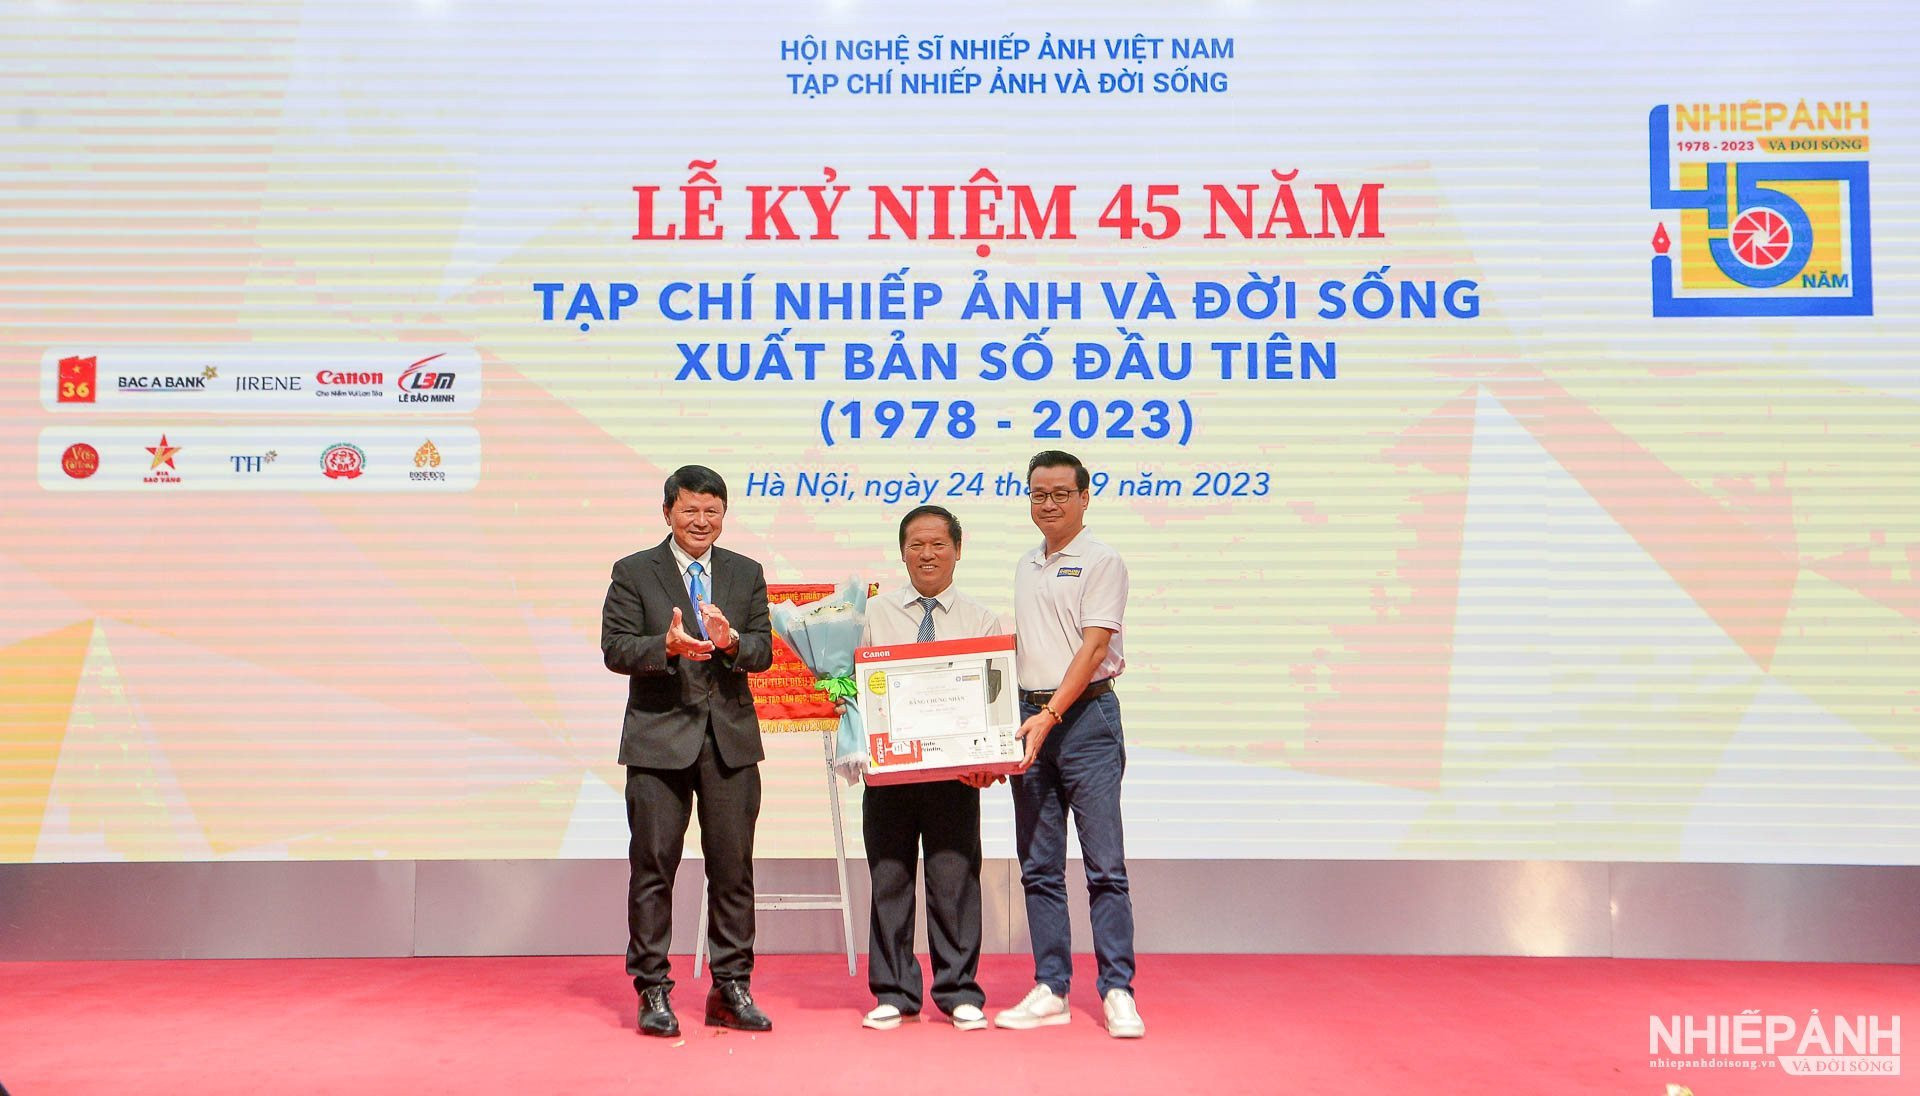 Ngày 24/9, NSNA Đoàn Hoài Trung - Chủ tịch Hội Nhiếp ảnh TPHCM và nhà báo Thái Sơn - Trưởng Đại diện phía Nam Tạp chí Nhiếp ảnh và Đời sống đã trao giải Tháng đầu tiên cho đại diện nhiếp ảnh gia Võ Duy Tuyên (Gia Lai) tại lễ kỷ niệm 45 năm Tạp chí Nhiếp ảnh và Đời sống vừa qua.